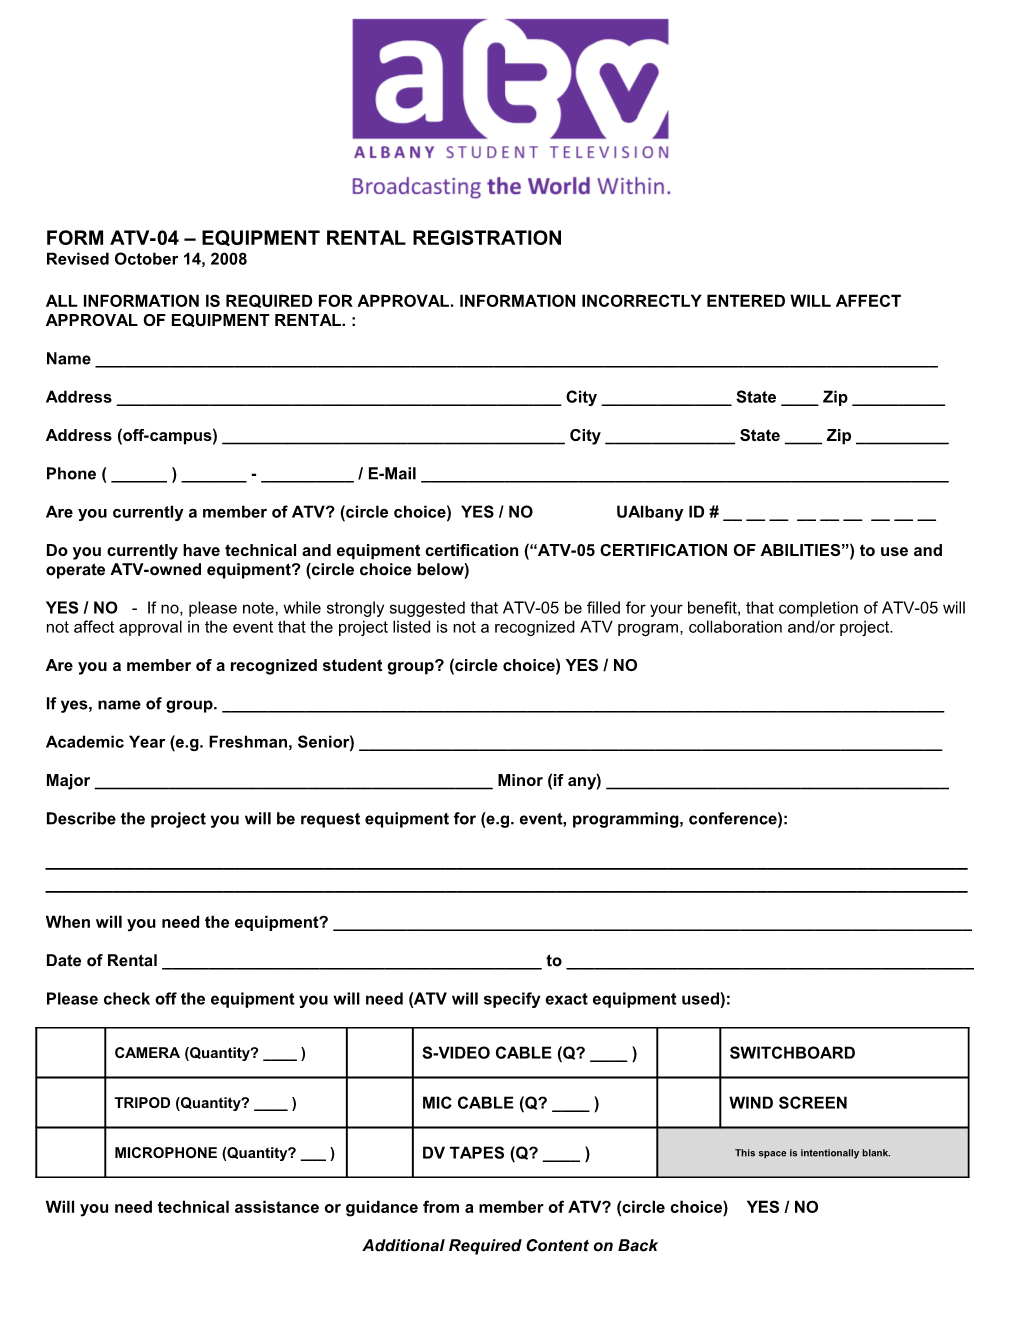 Form Atv-04 Equipment Rental Registration